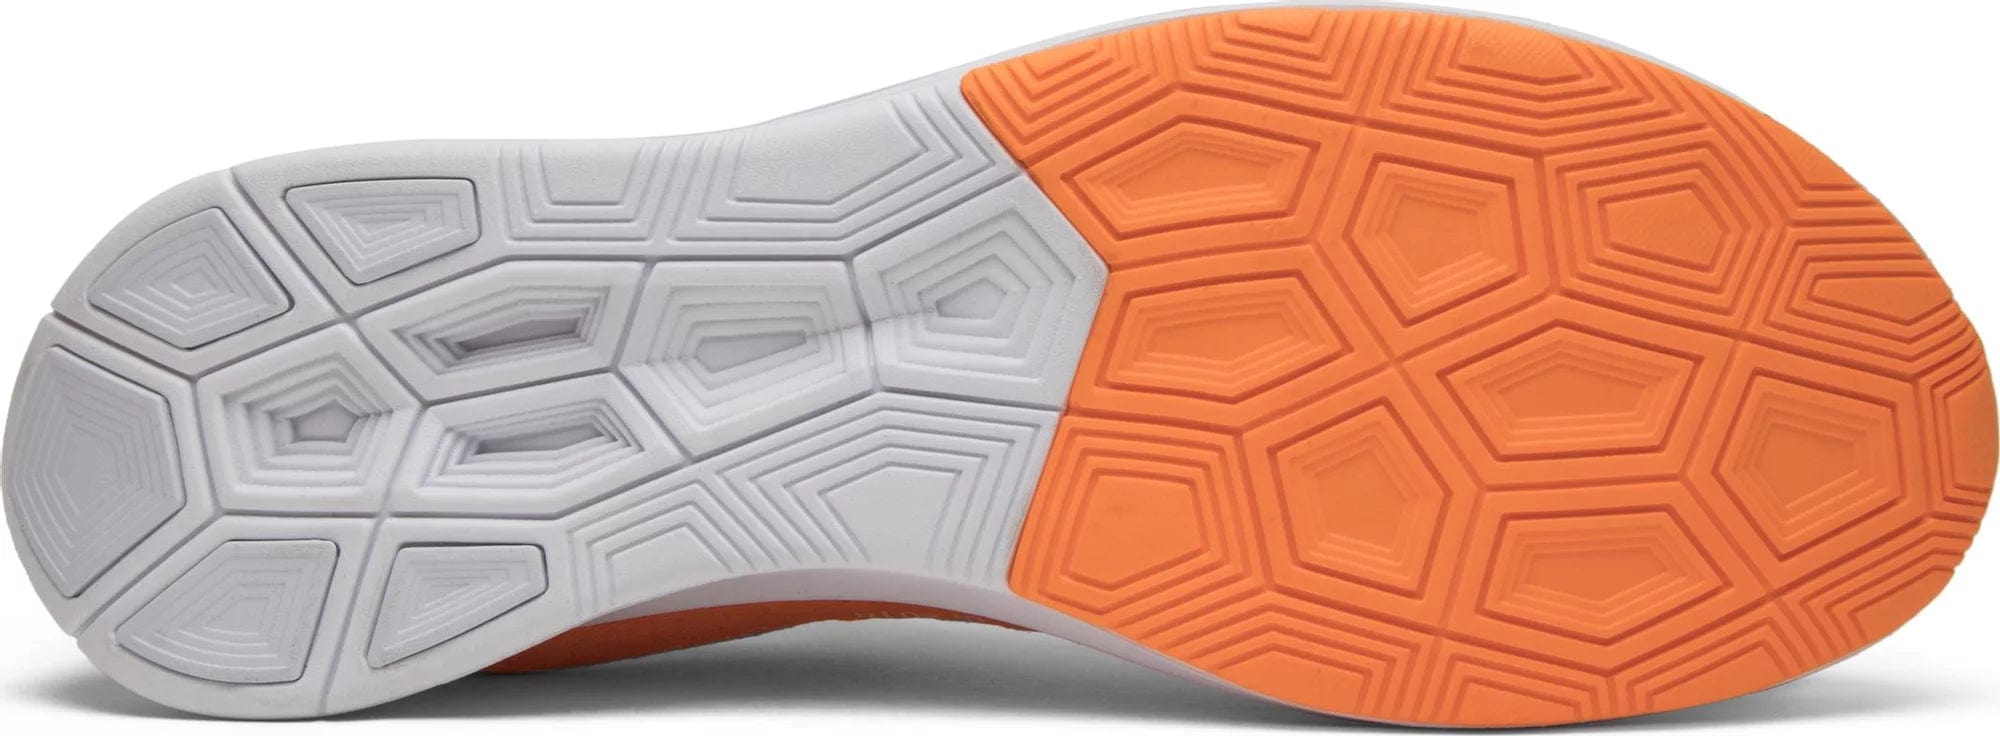 sneakers Nike Zoom Fly Mercurial Off-White Total Orange Men's